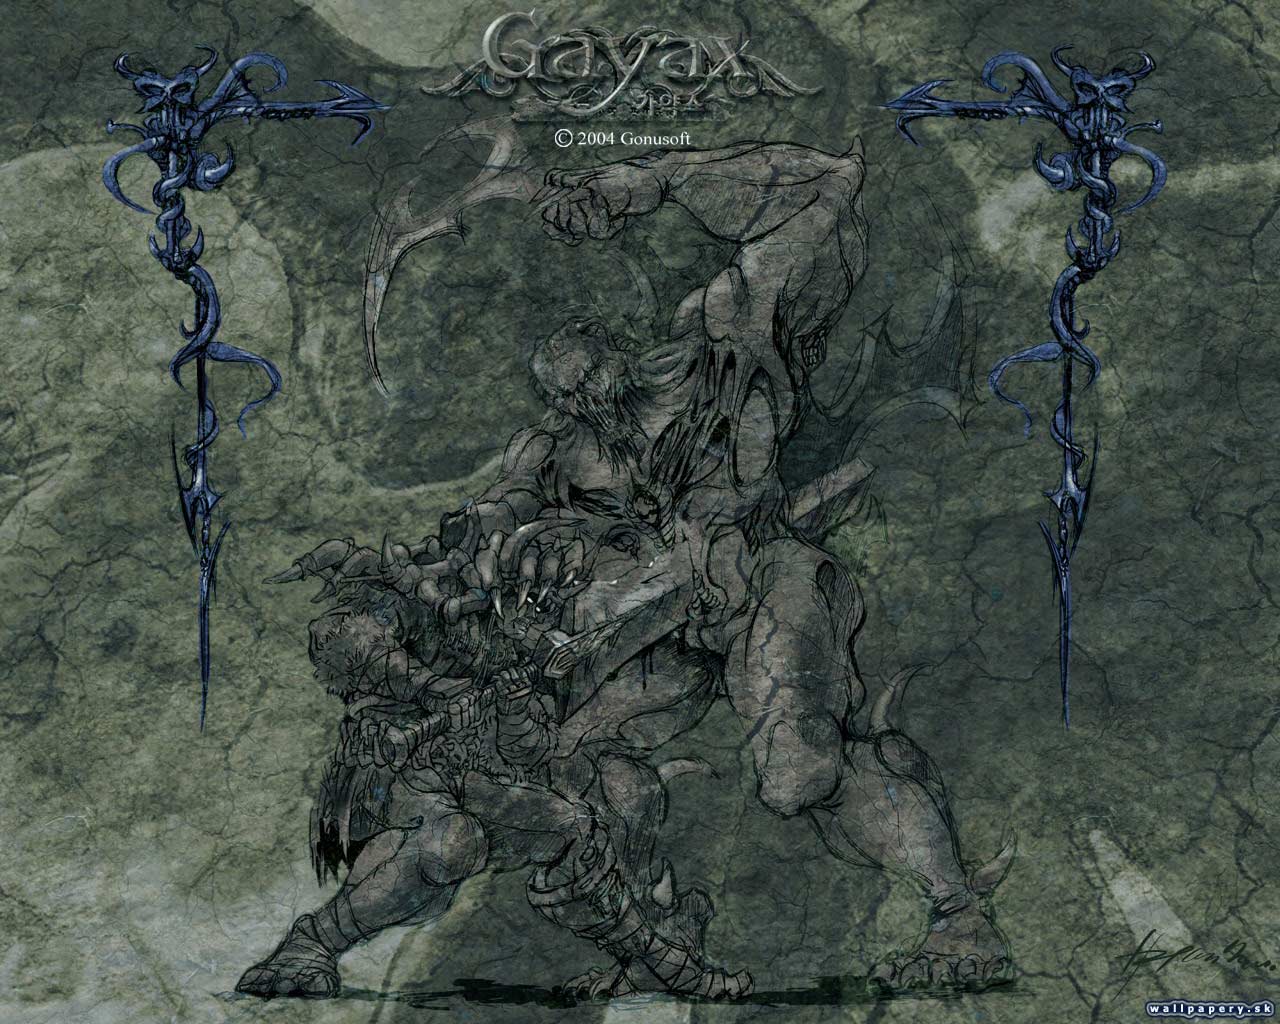 Gayax - wallpaper 8